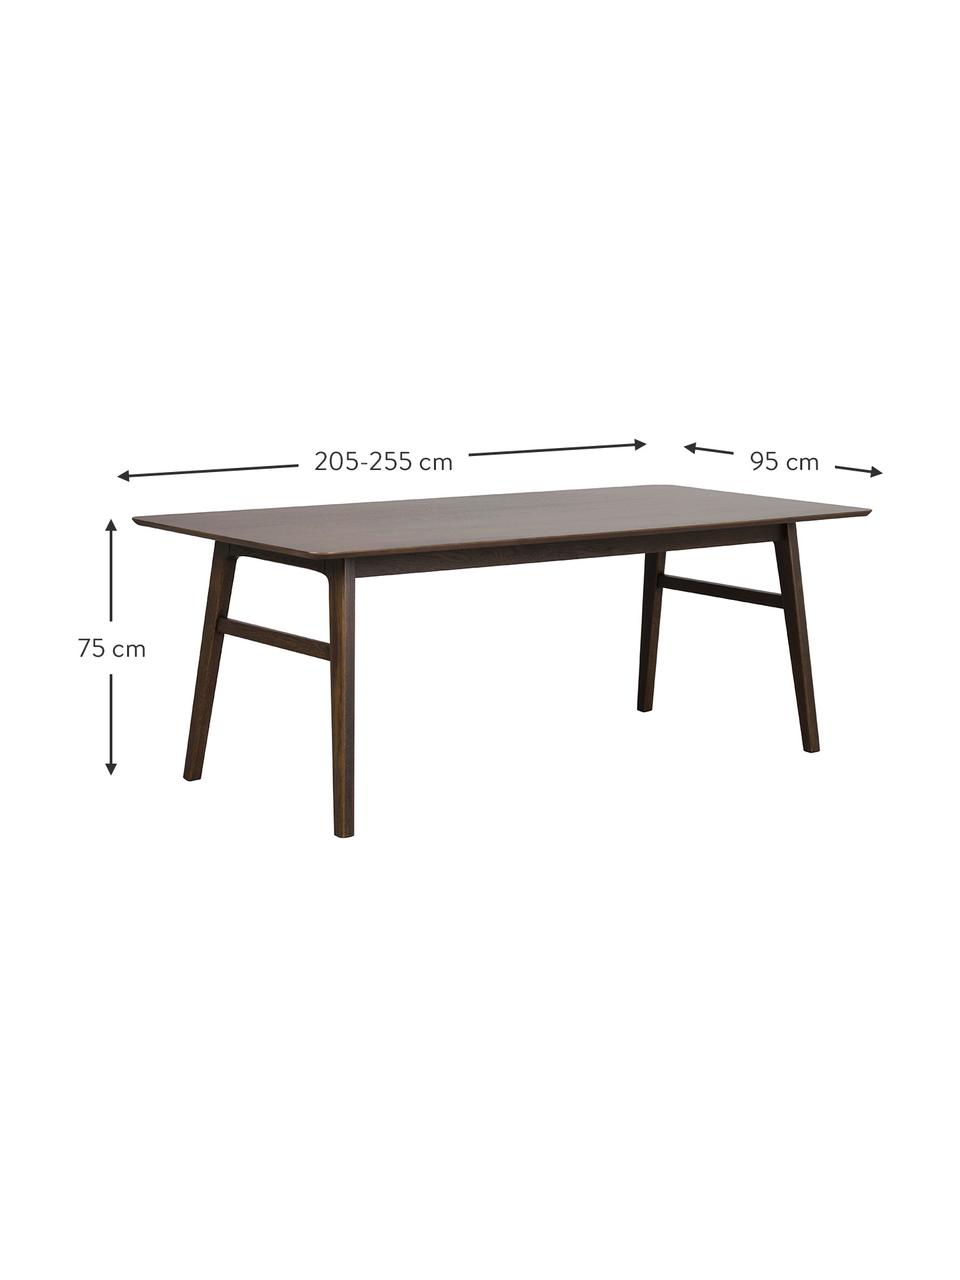 Prodlužovací jídelní stůl z dubového dřeva Nagano, 205-255 x 95 cm, Dřevo, Š 205 cm, H 95 cm